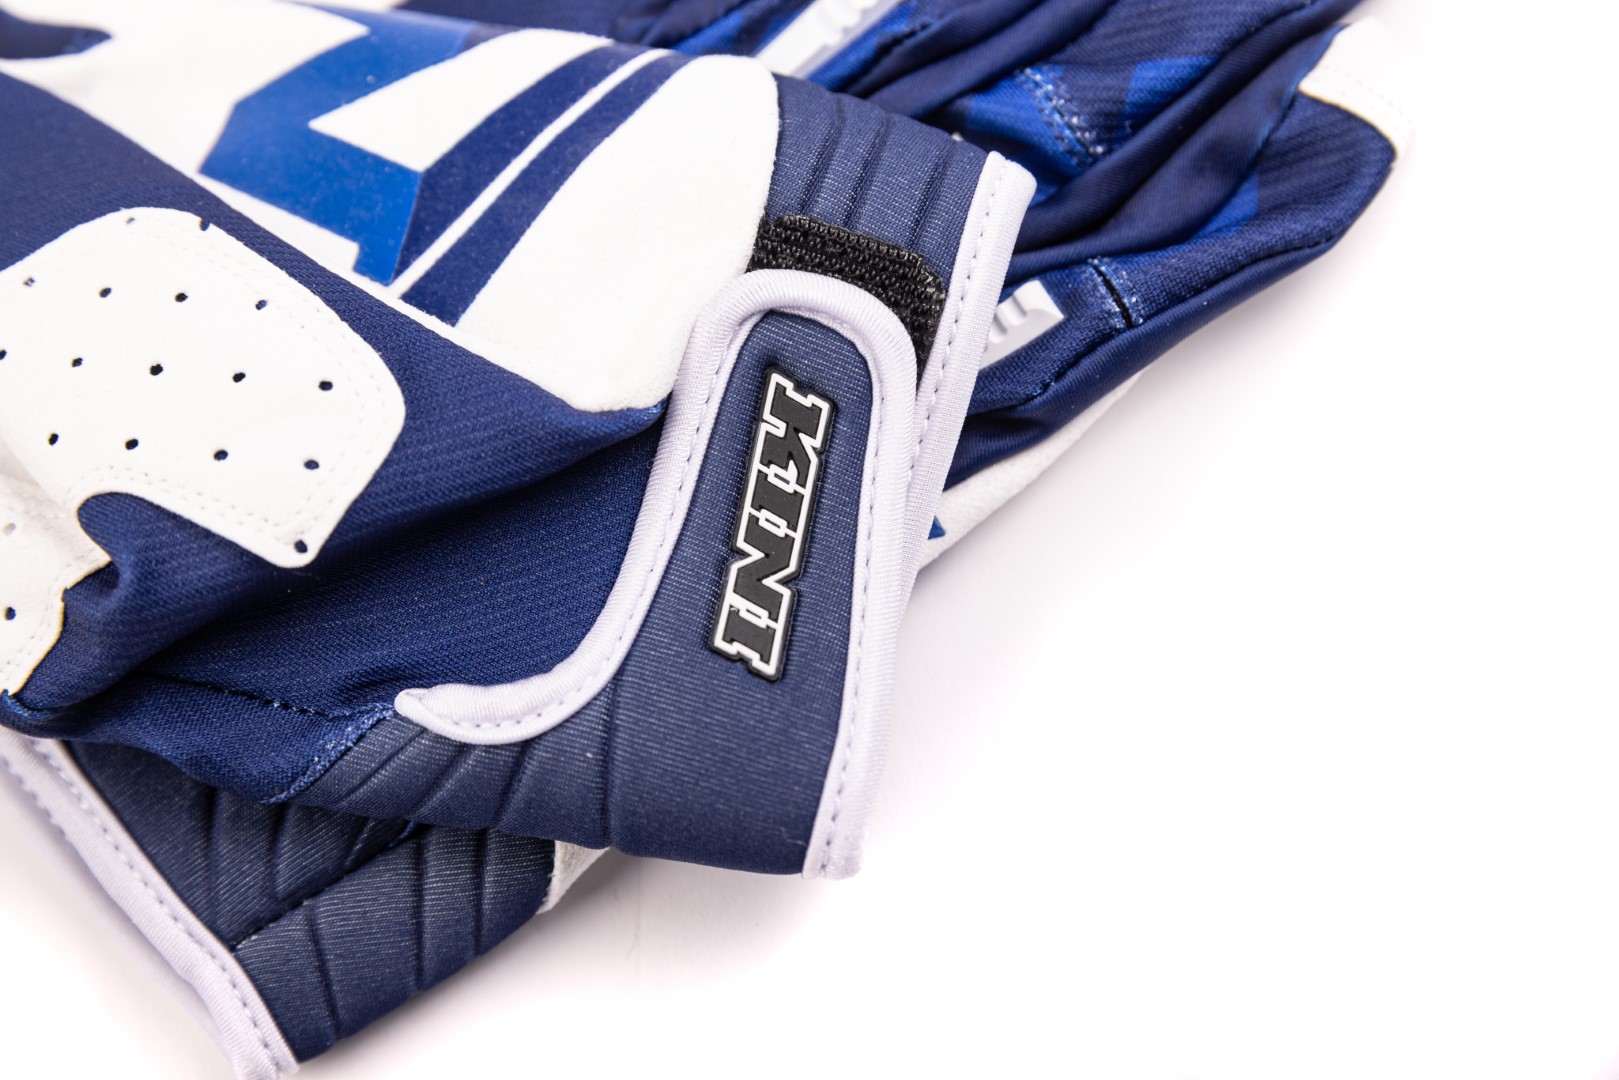 KINI Red Bull Kids Division Gloves V 2.2 - Navy/White | KINI Online Shop